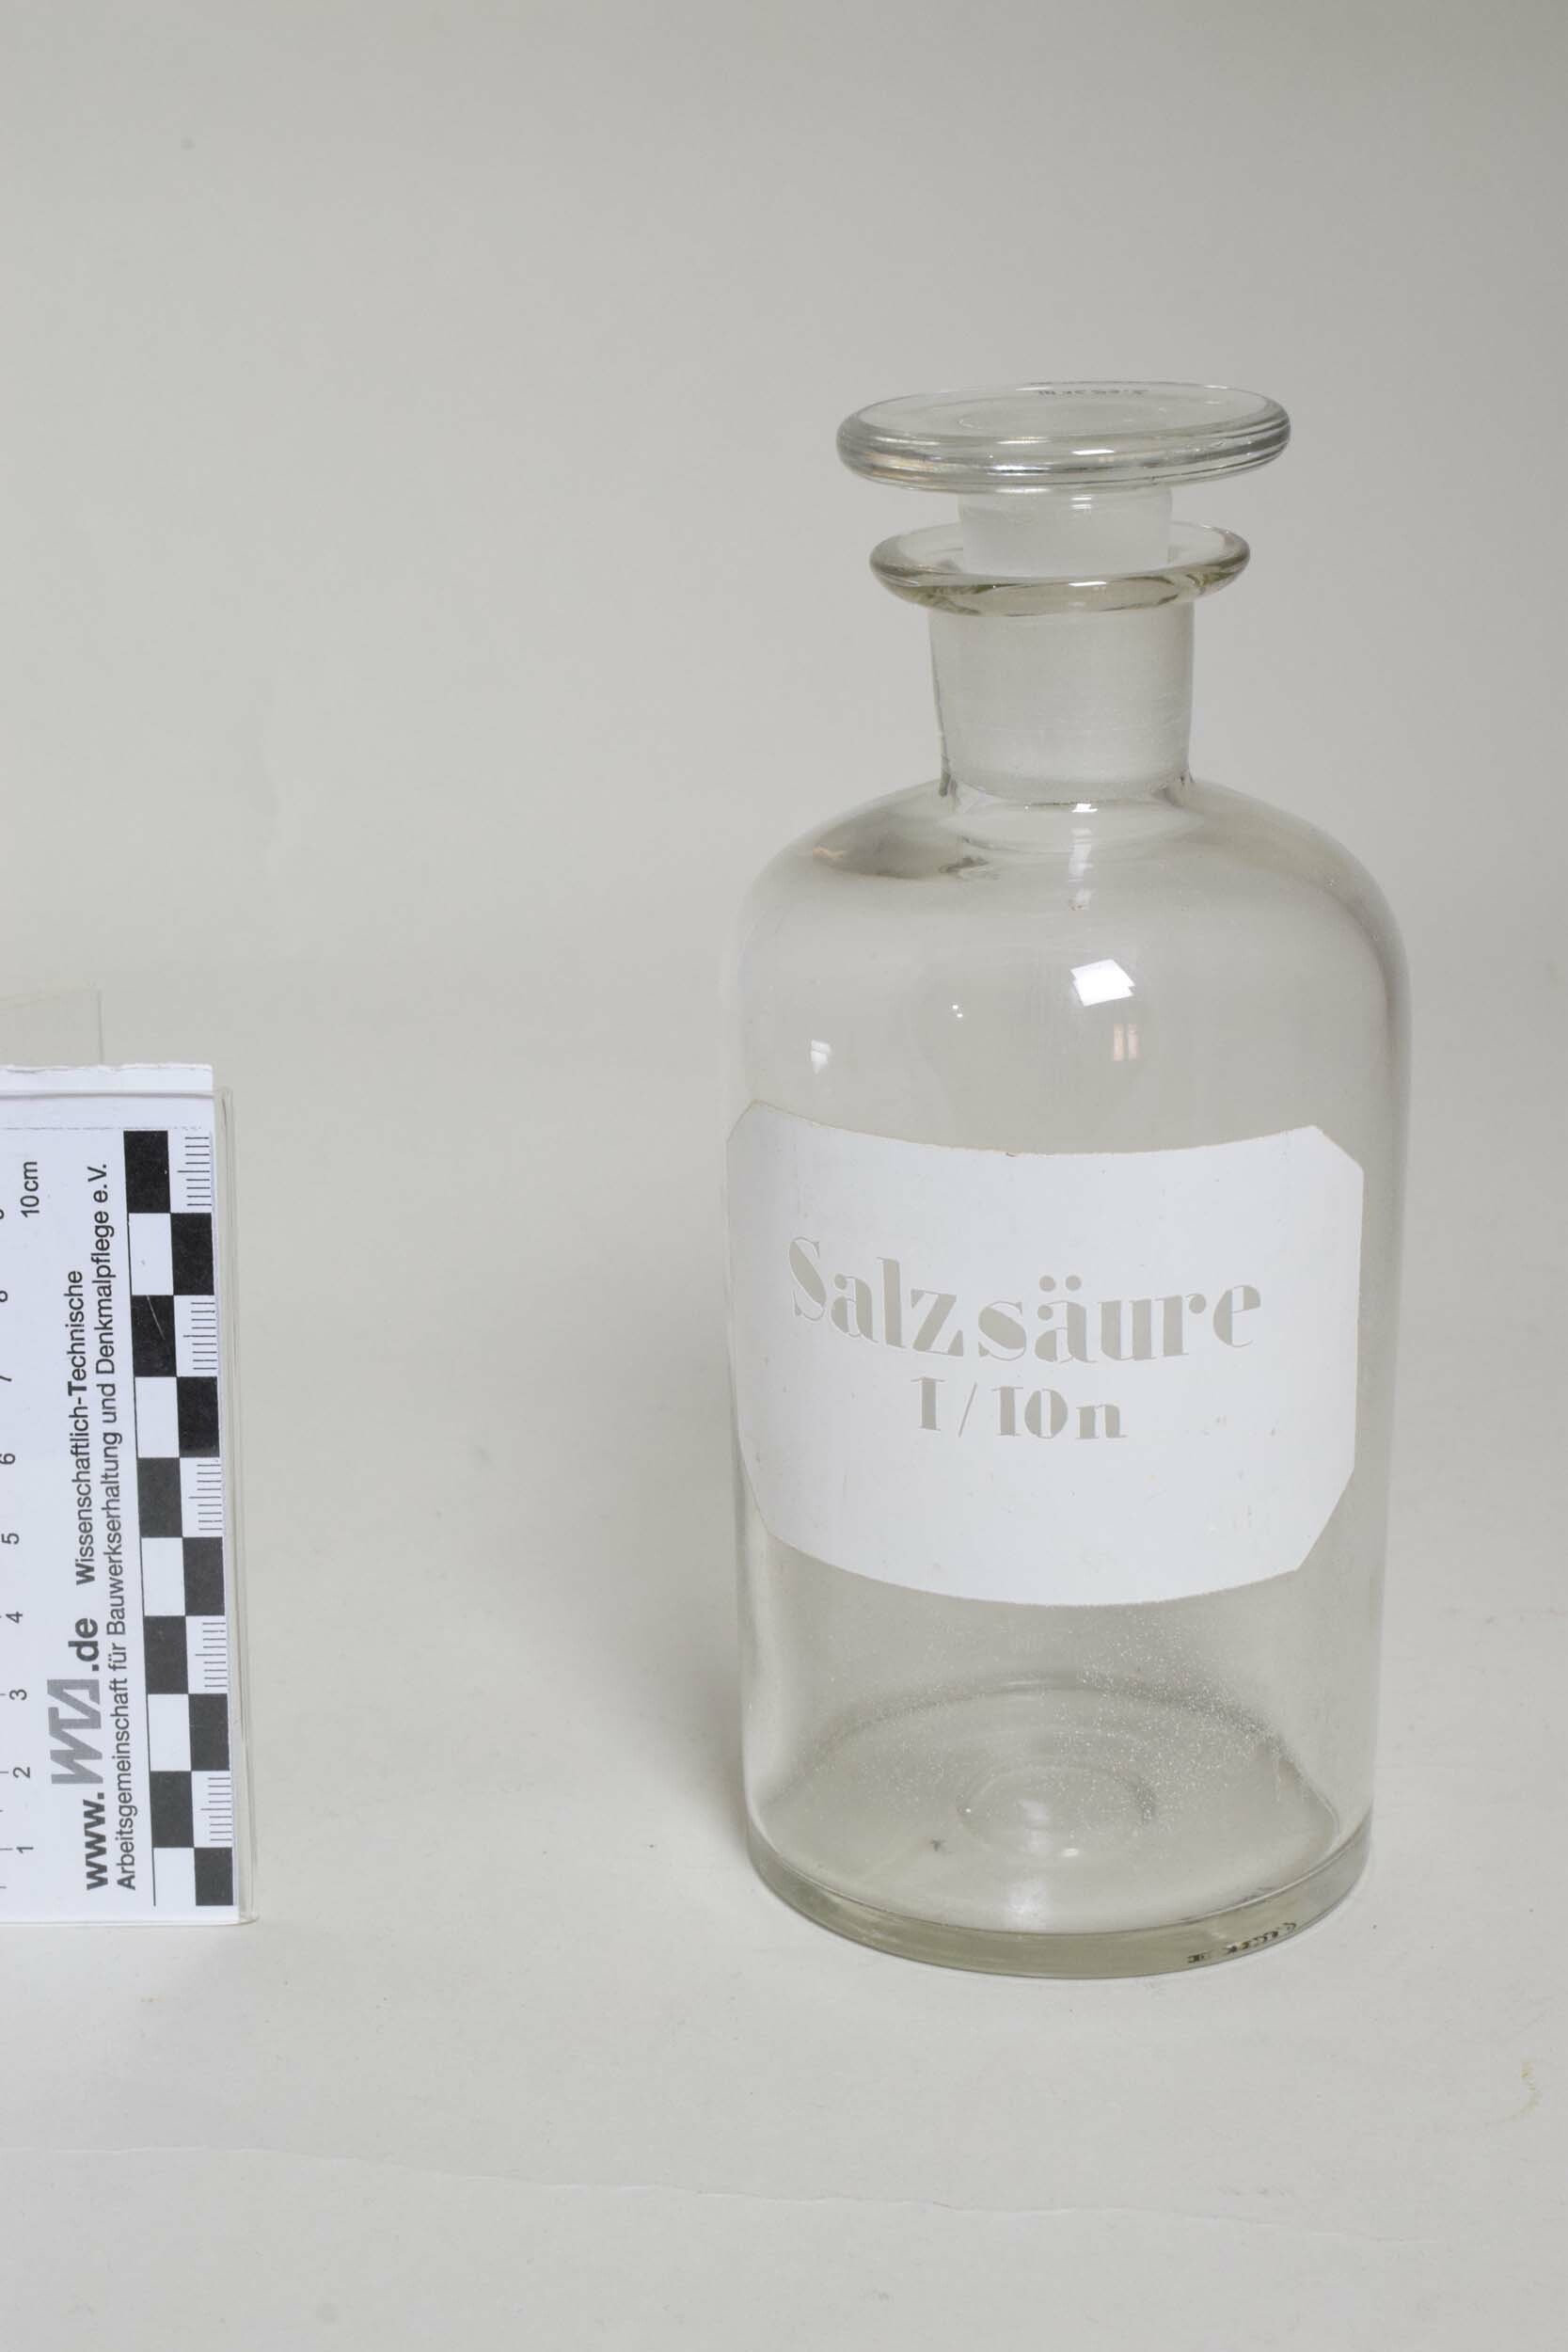 Apothekenflasche "Salzsäure 1/10n" (Heimatmuseum Dohna CC BY-NC-SA)